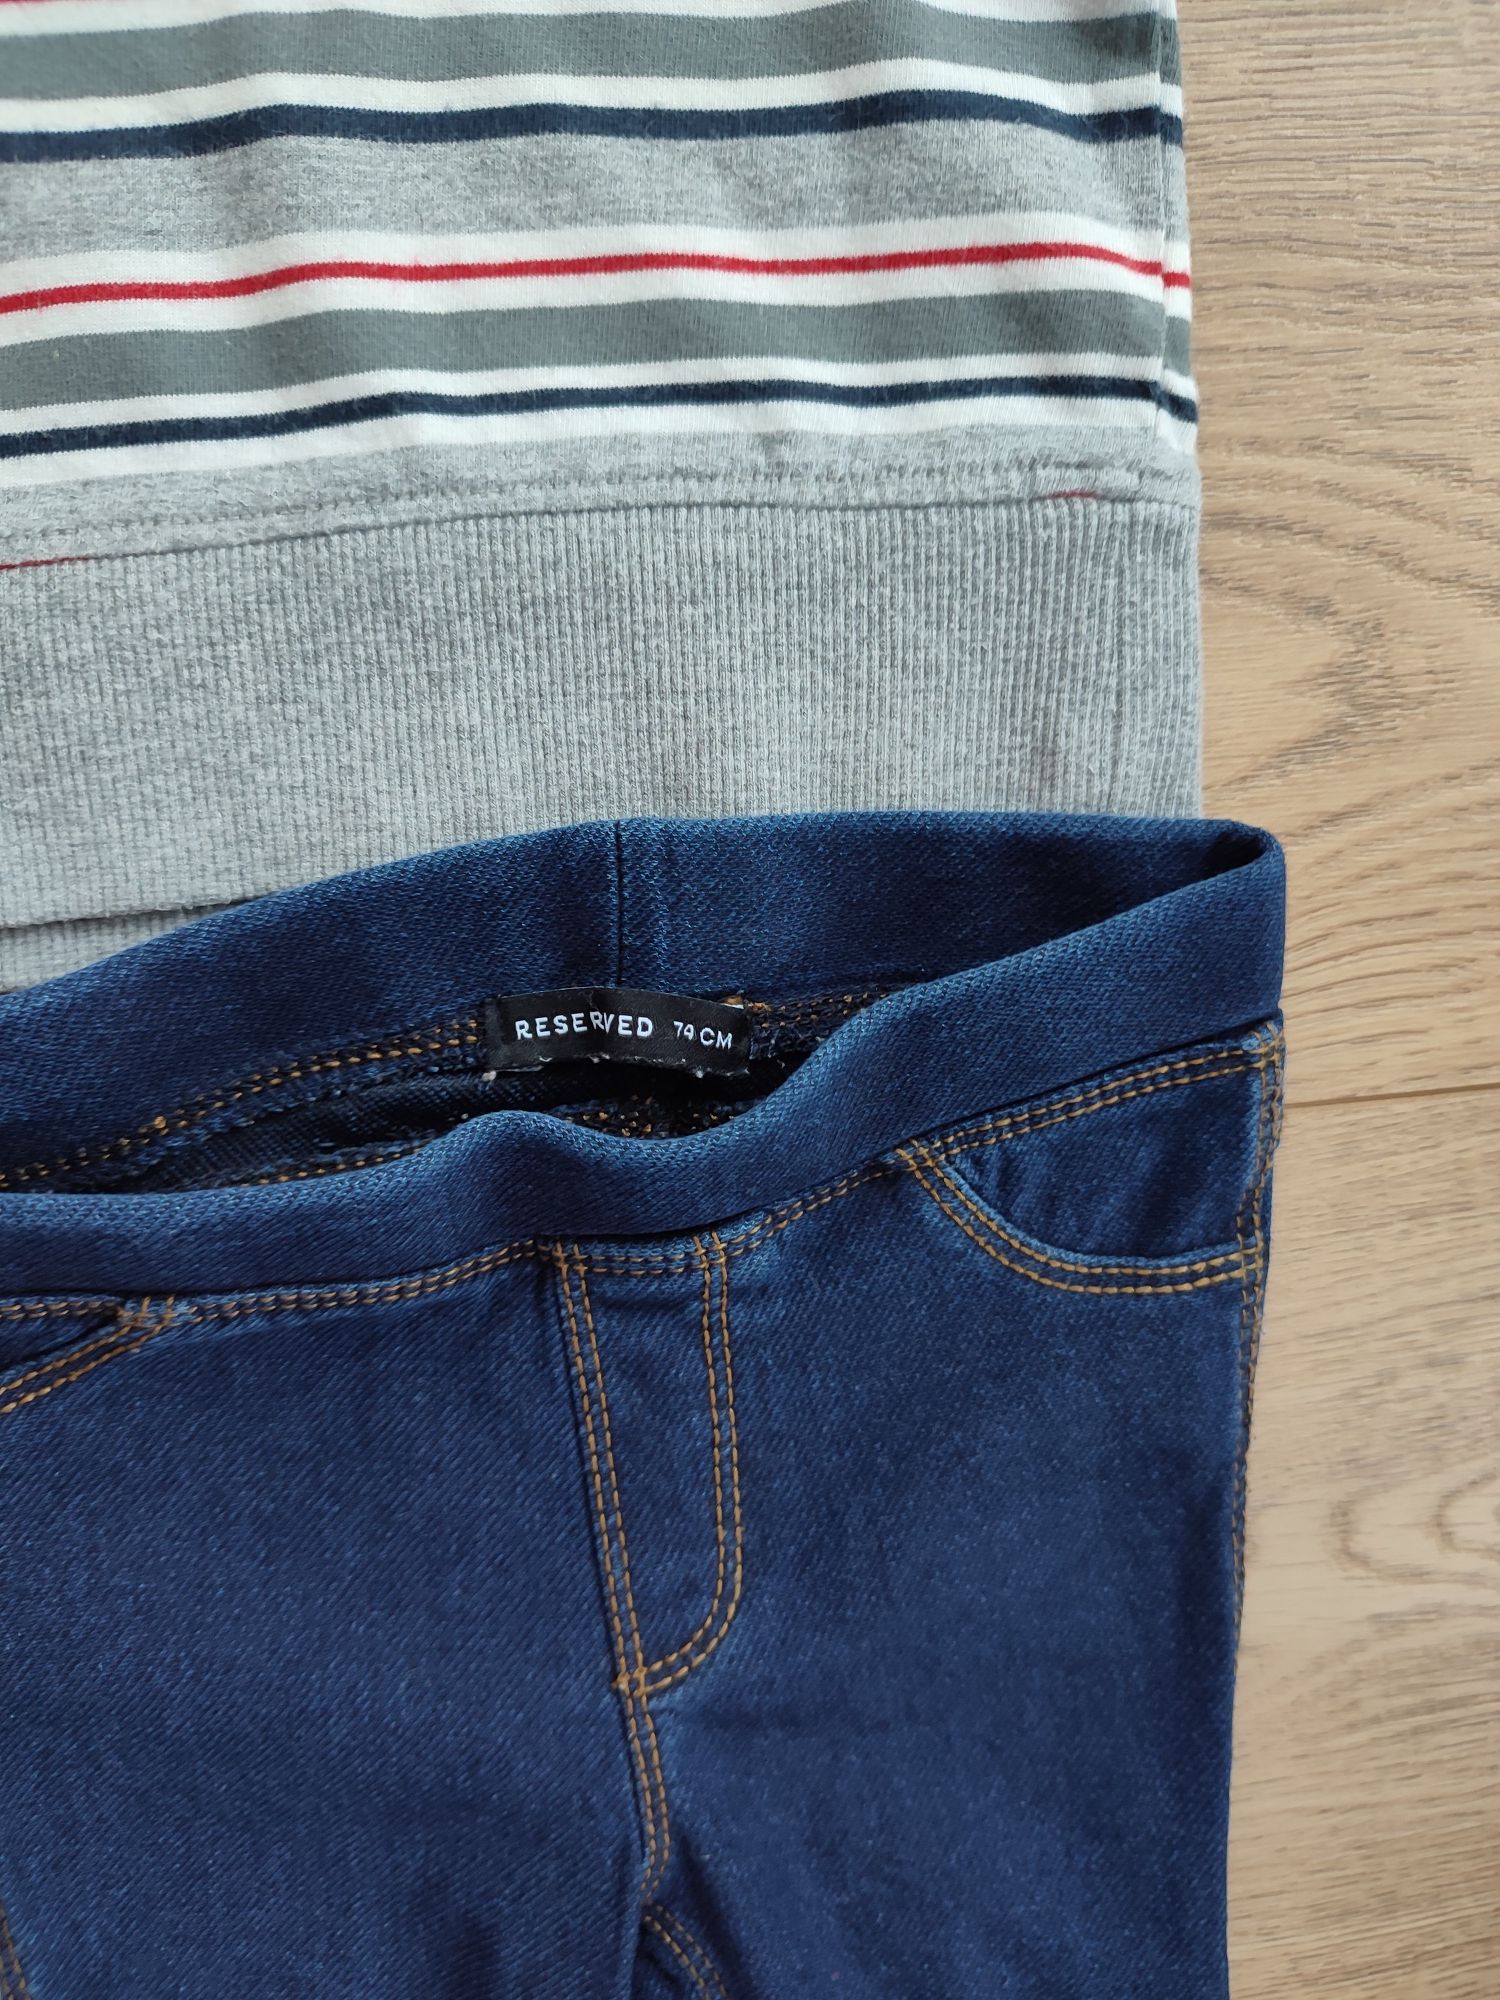 Bluza next i spodnie legginsy, jak jeansowe Reserved 68 - 74